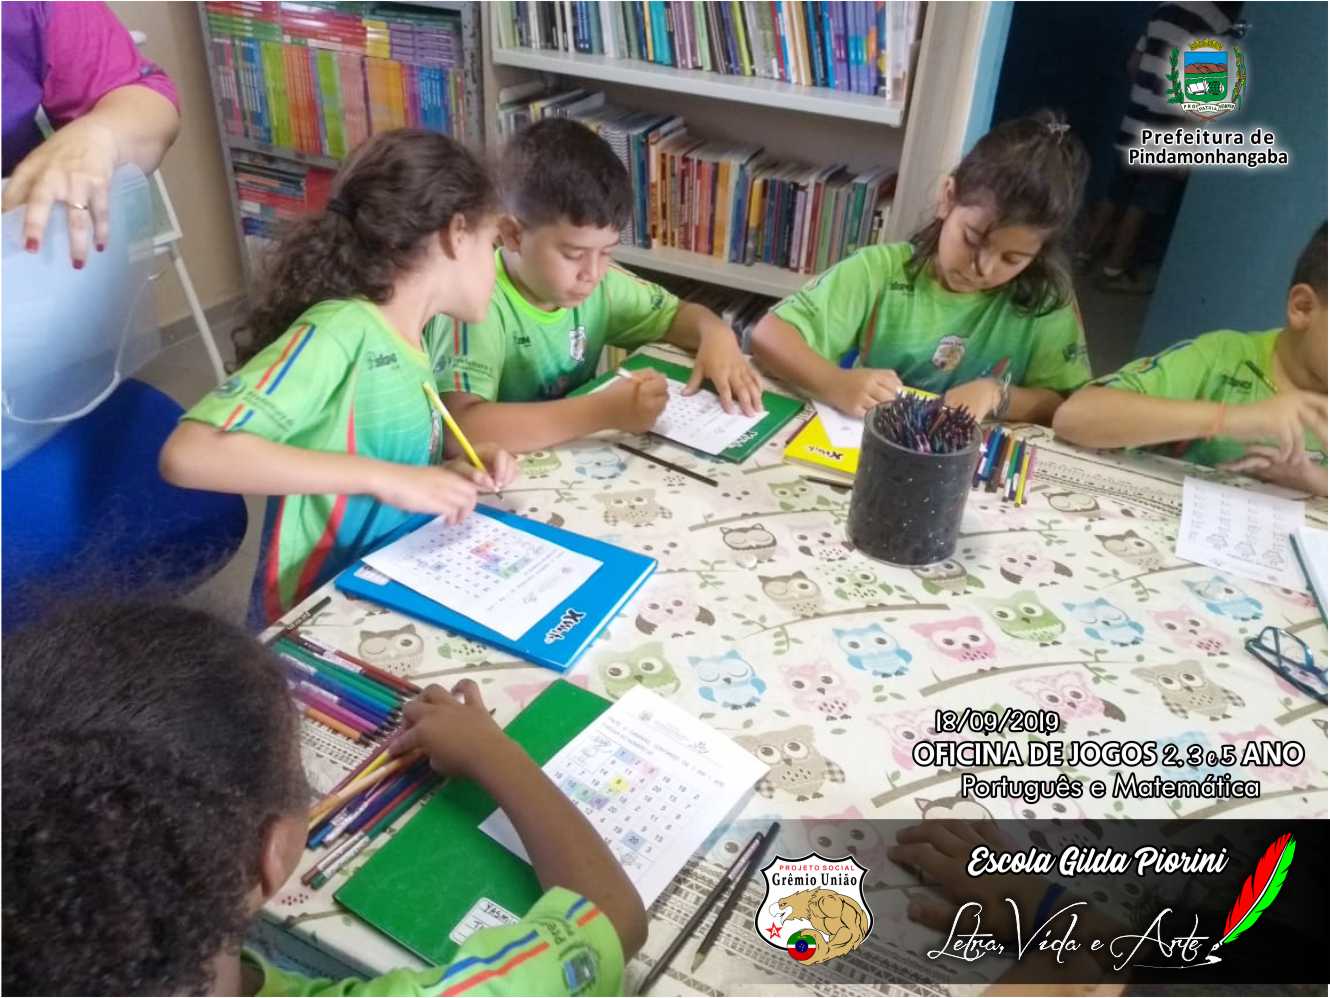 Oficina de Jogos Português e Matemática – Escola Gilda Piorini – Projeto  Social Grêmio União